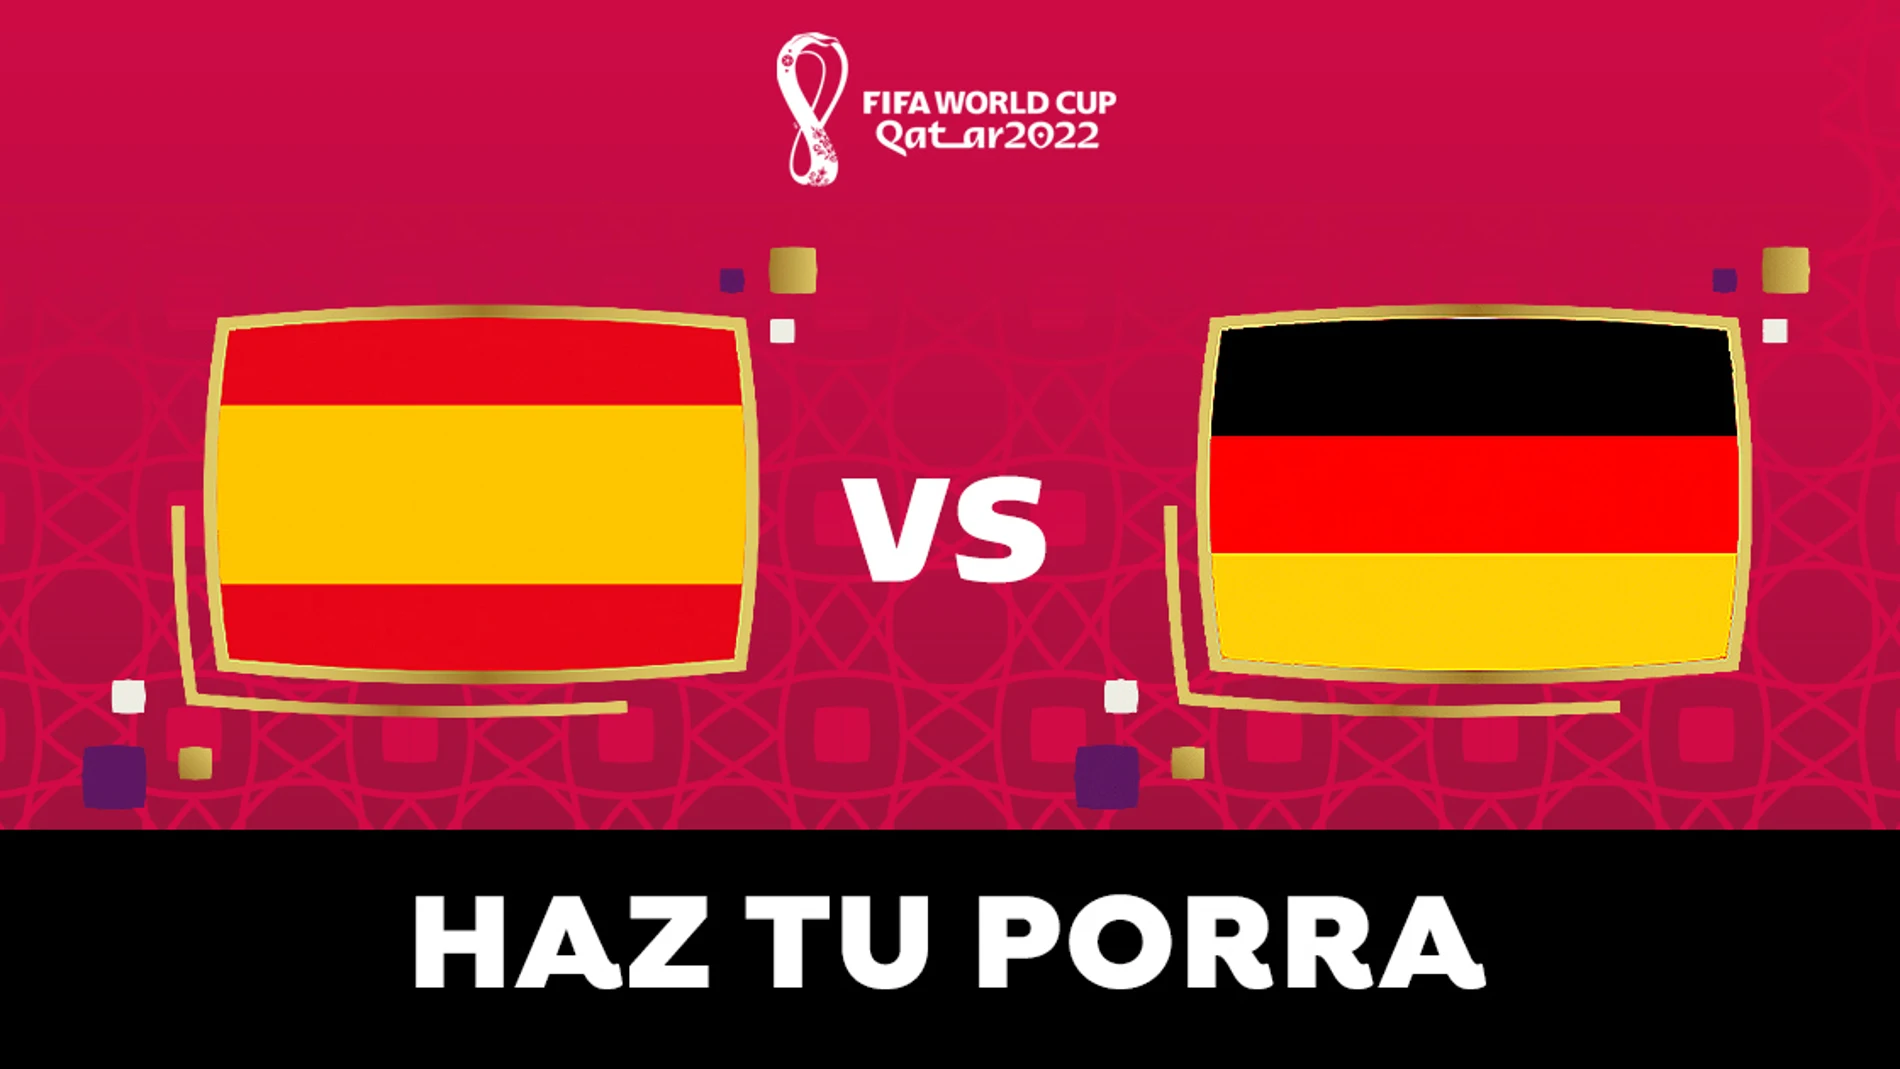 PORRA: ¿Quién ganará el España - Alemania del Mundial? 